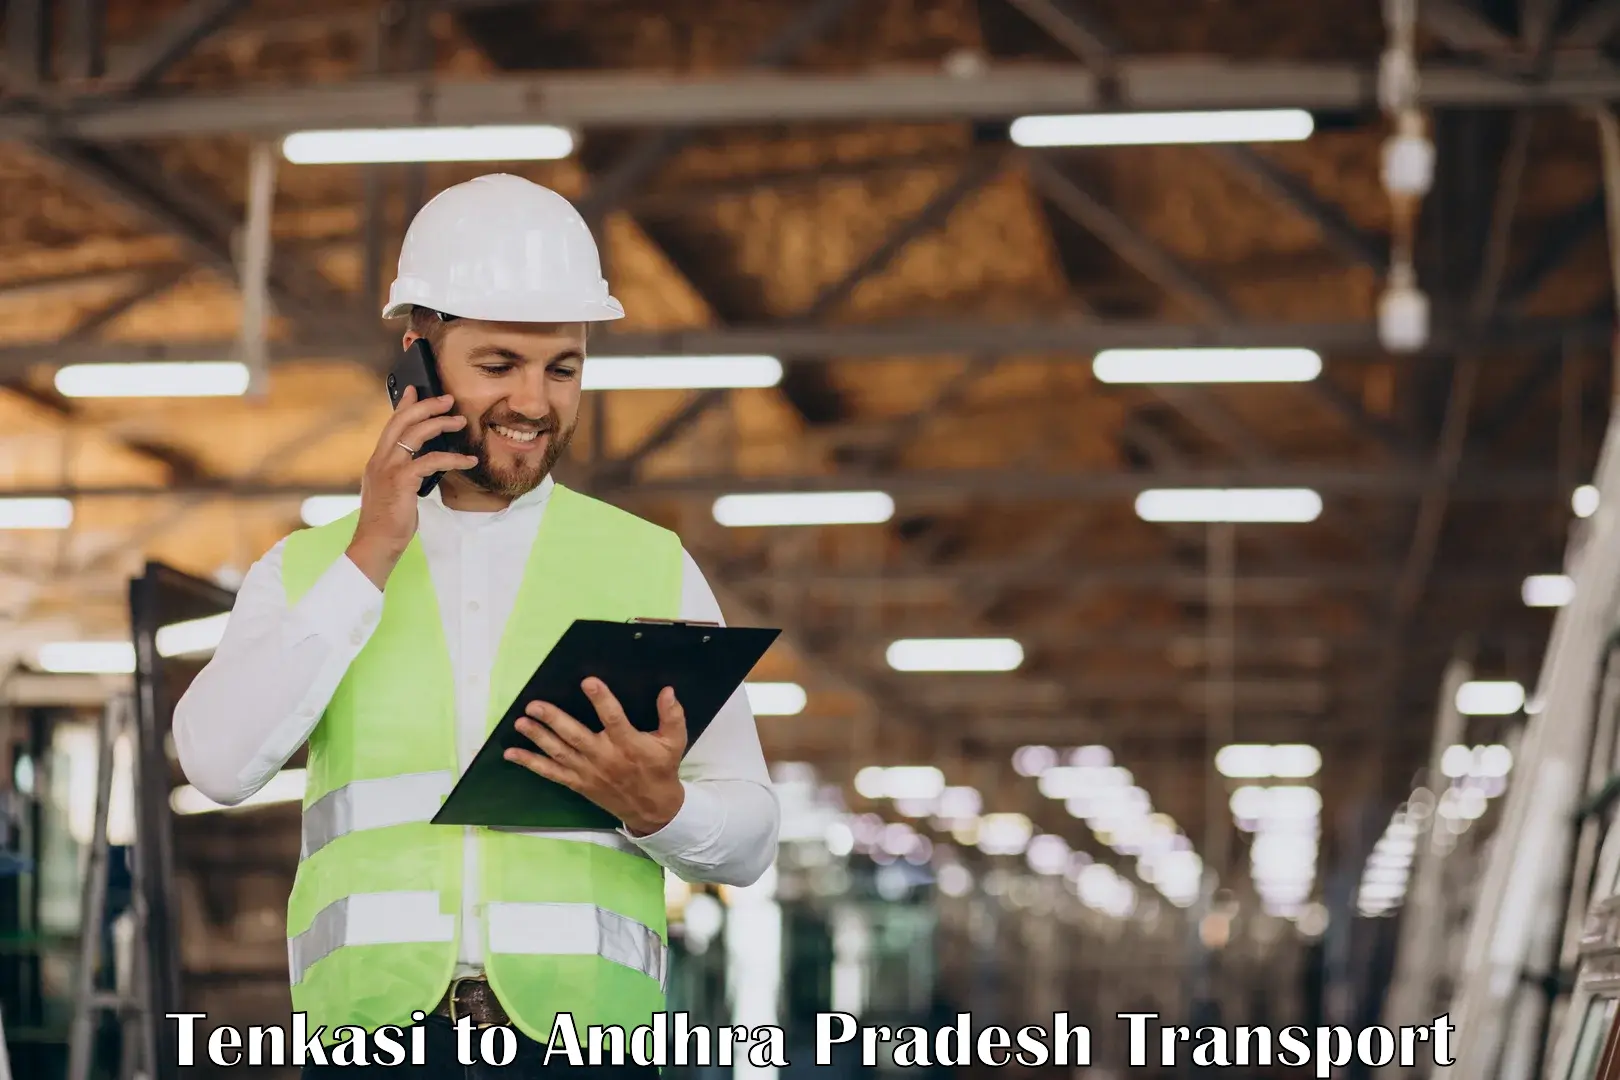 Online transport service Tenkasi to IIT Tirupati